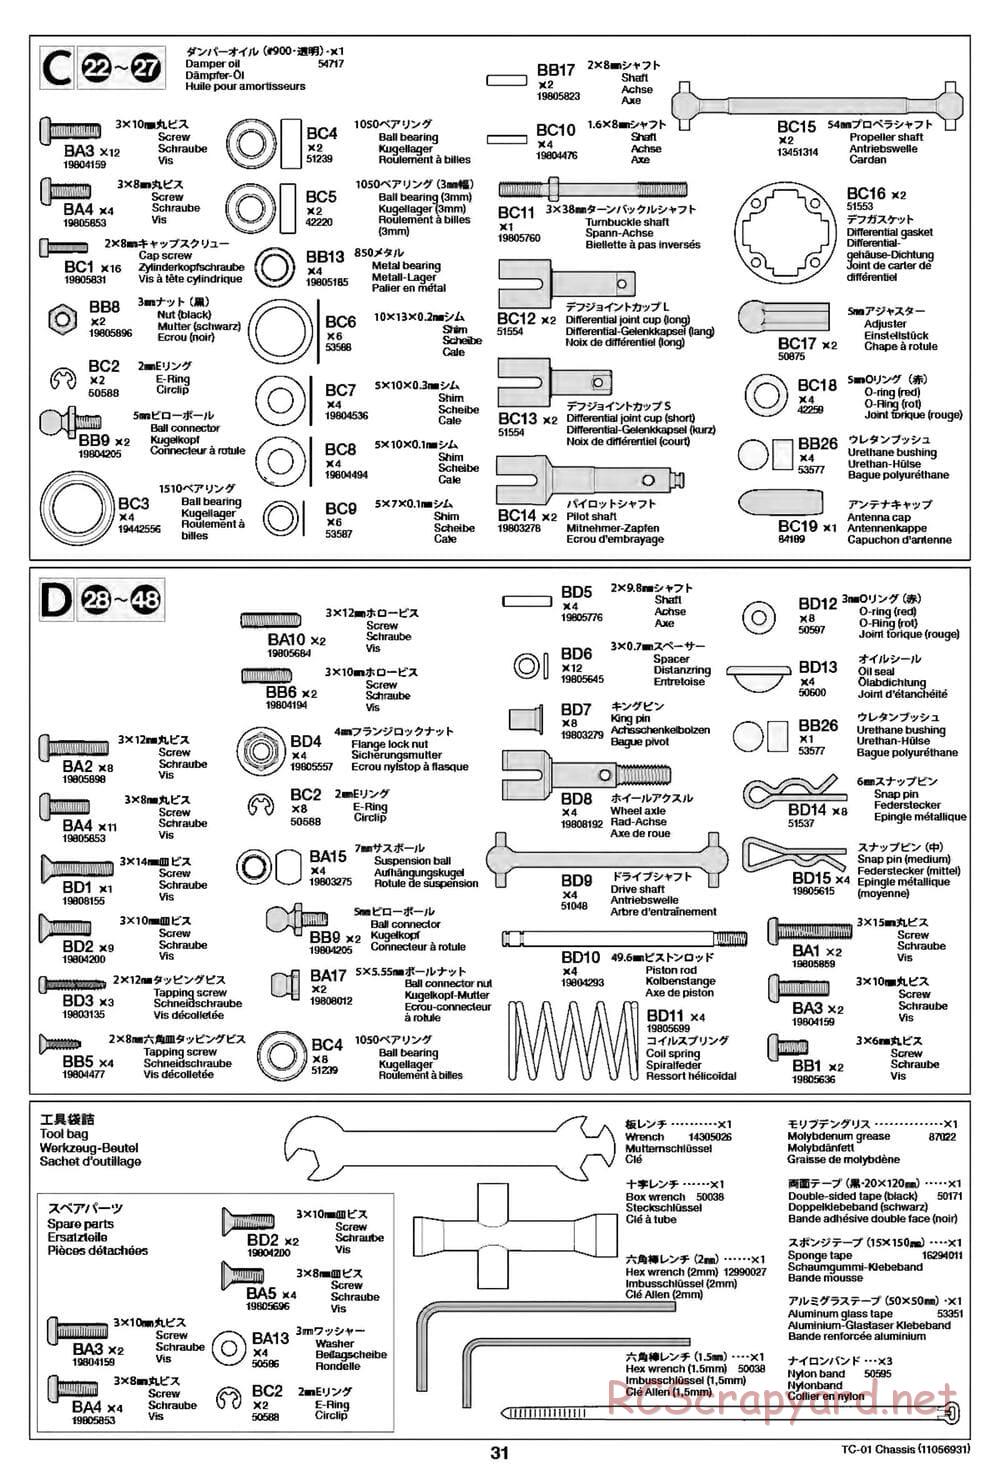 Tamiya - TC-01 Chassis - Manual - Page 31